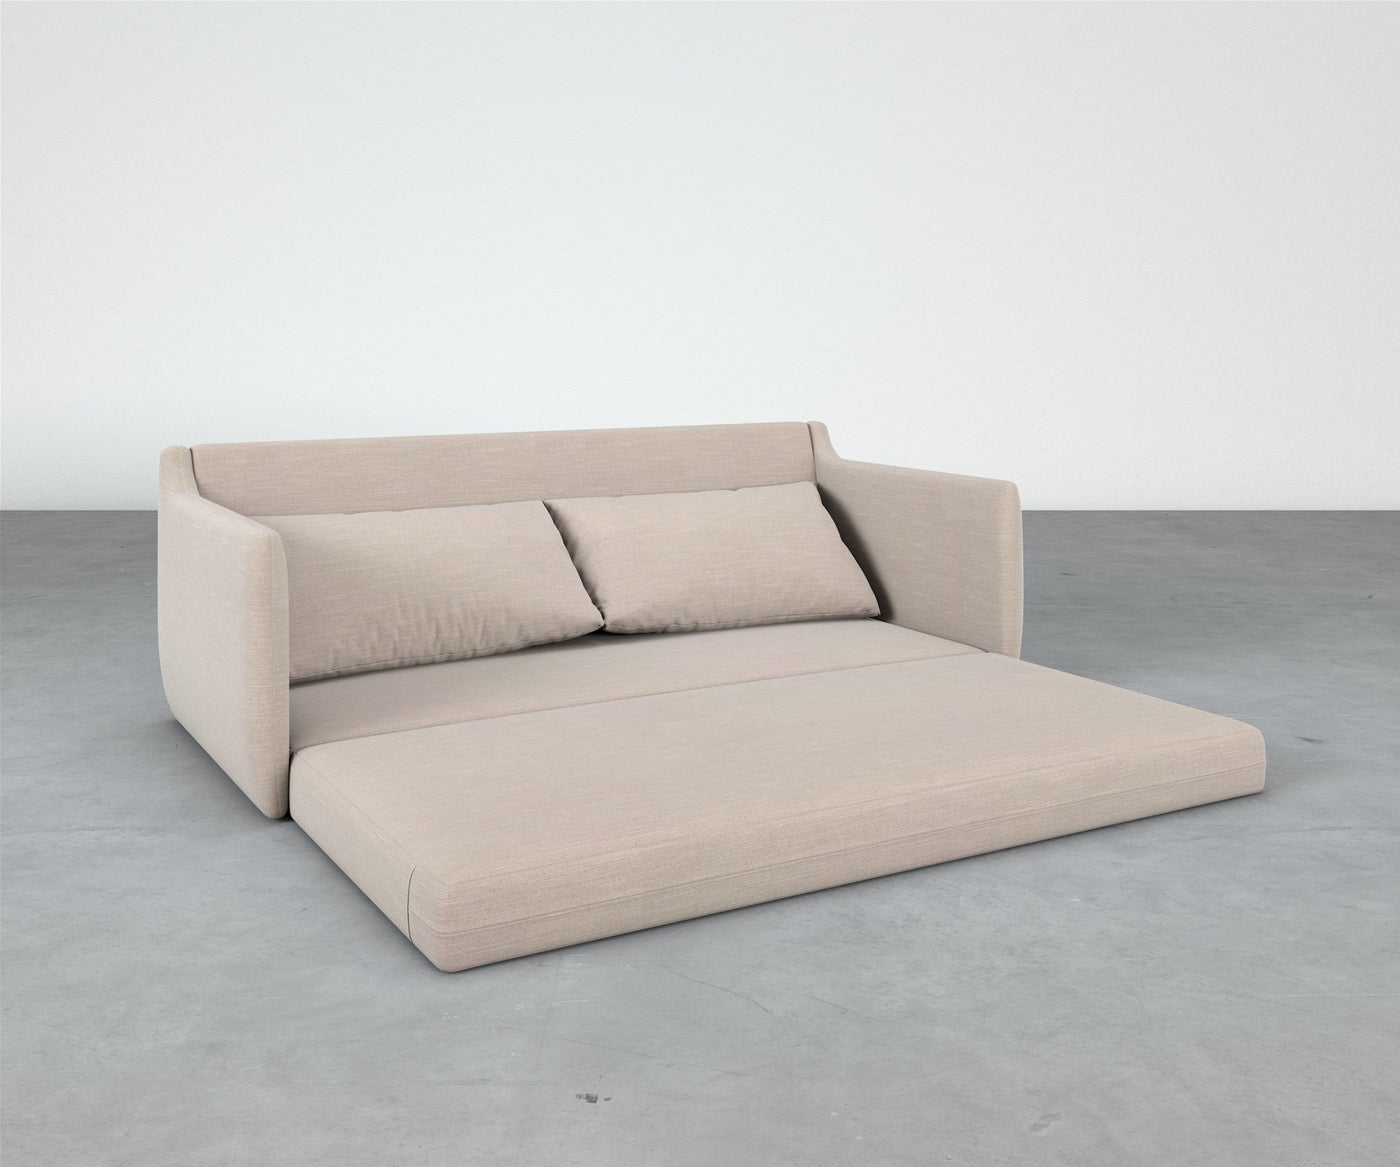 Saramony Sleeper Sofa - Sofa, Bed